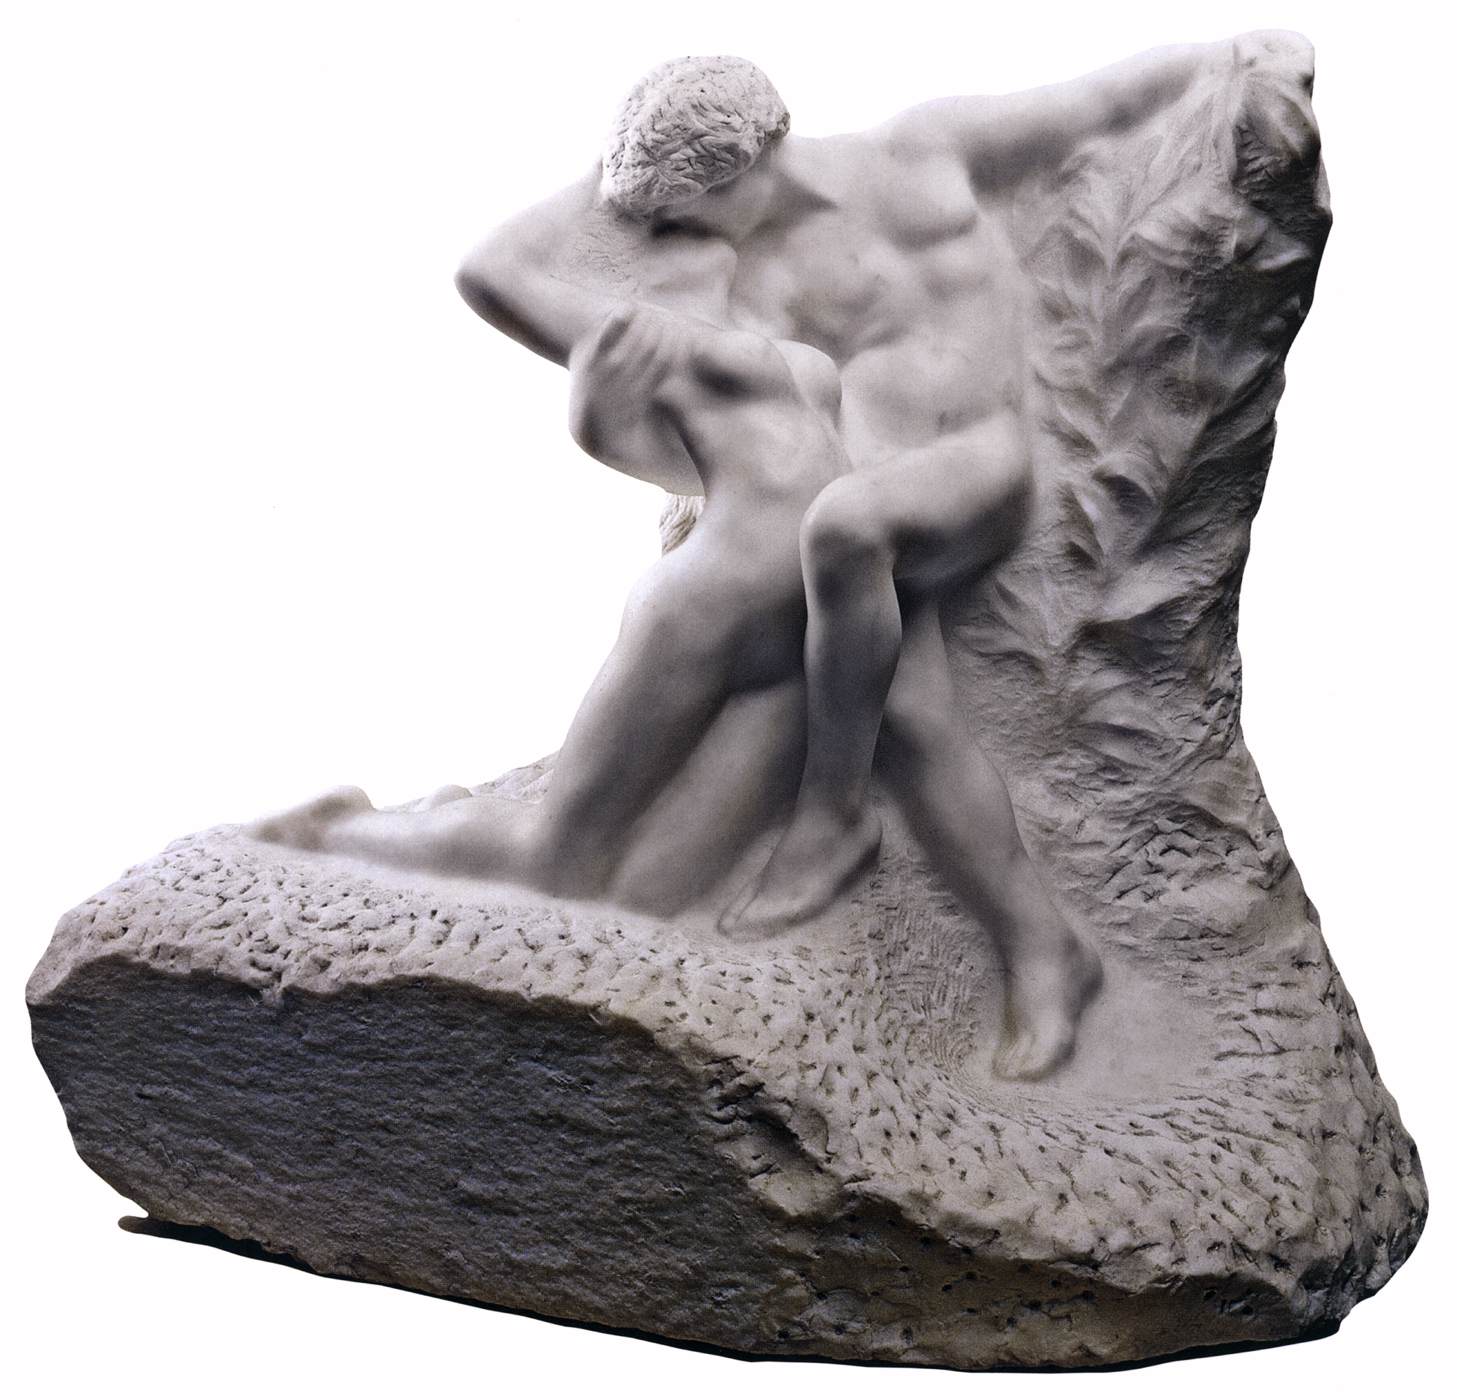 Auguste+Rodin-1840-1917 (235).jpg